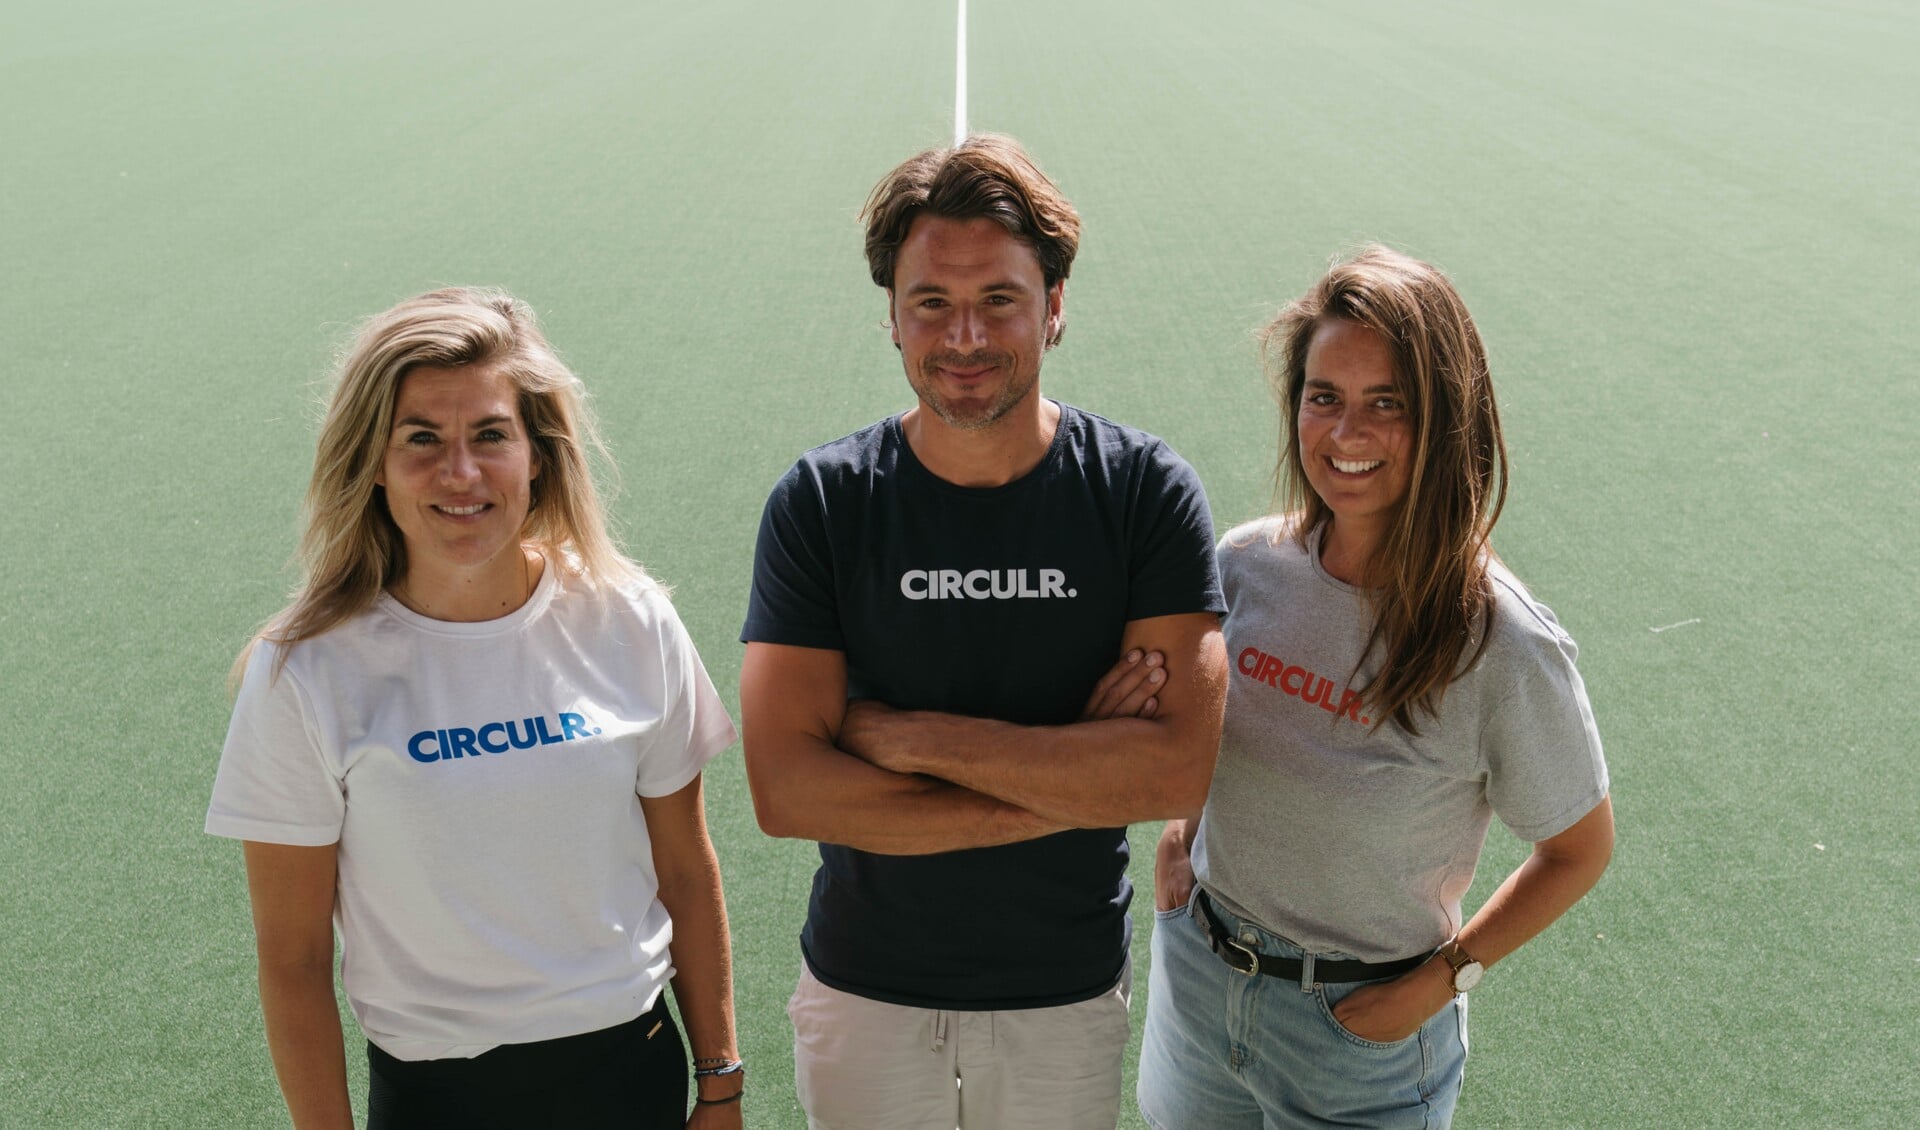 De oprichters van CIRCULR. - Kim Lammers, Floris Verheij en Fleur Nijland.